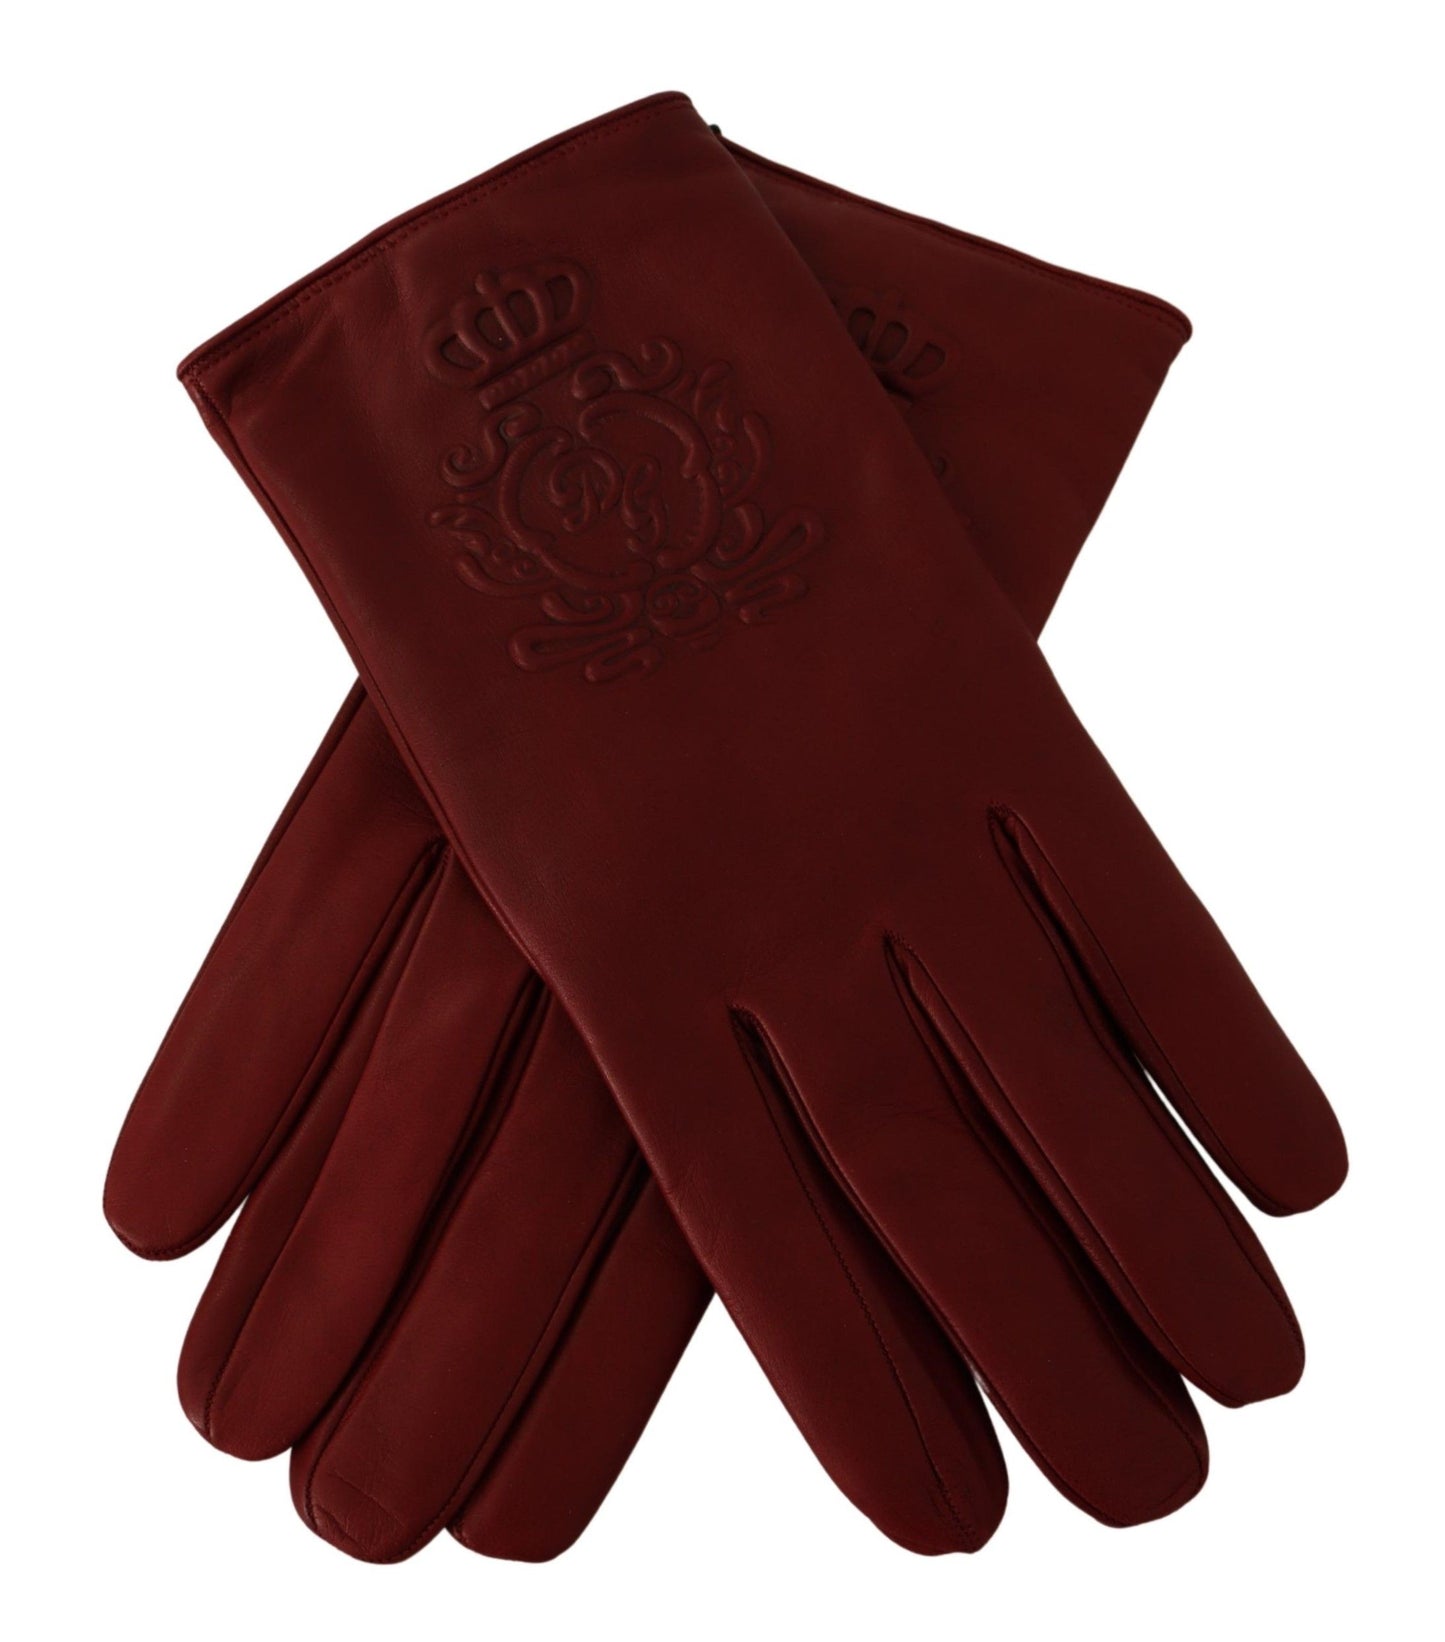 Elegant Burgundy Leather Gloves for Men